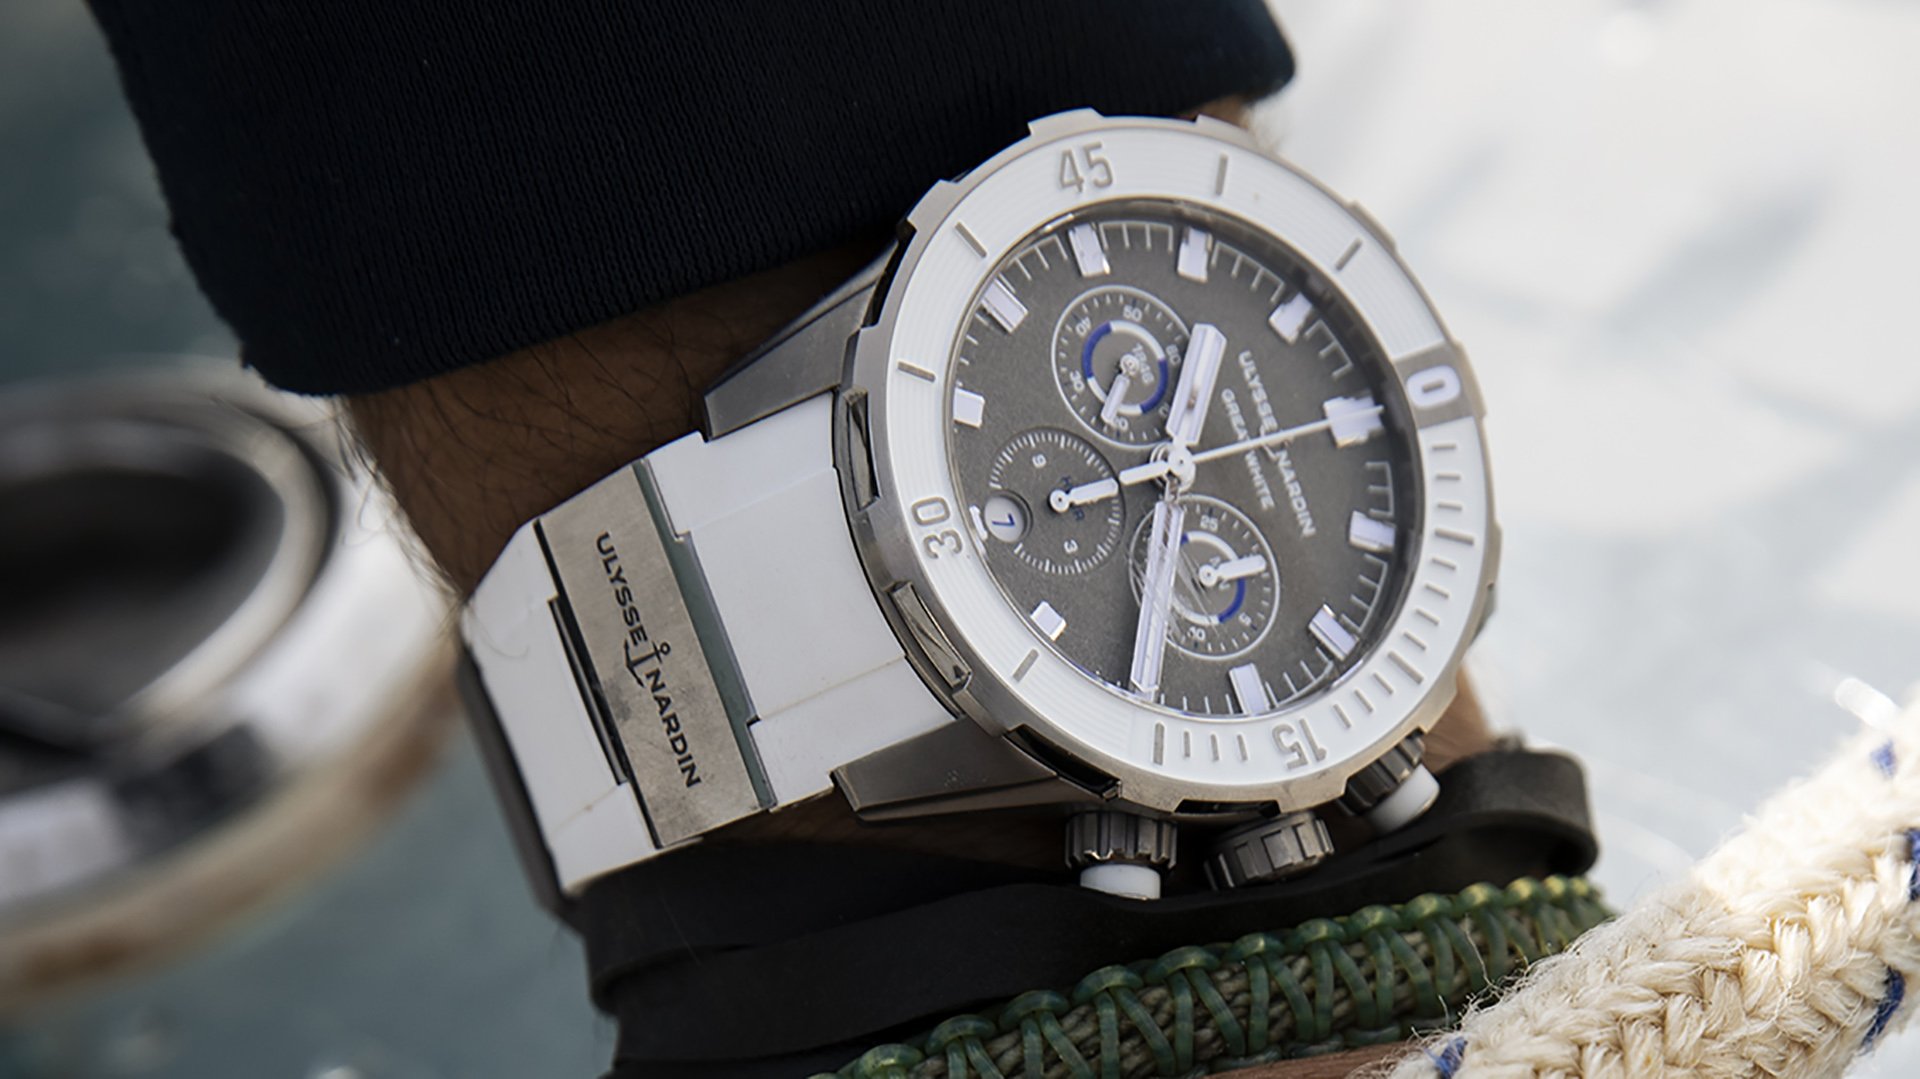 Ulysse Nardin представляет хронограф Diver Chronograph 44 мм ограниченной серии Great White Watch